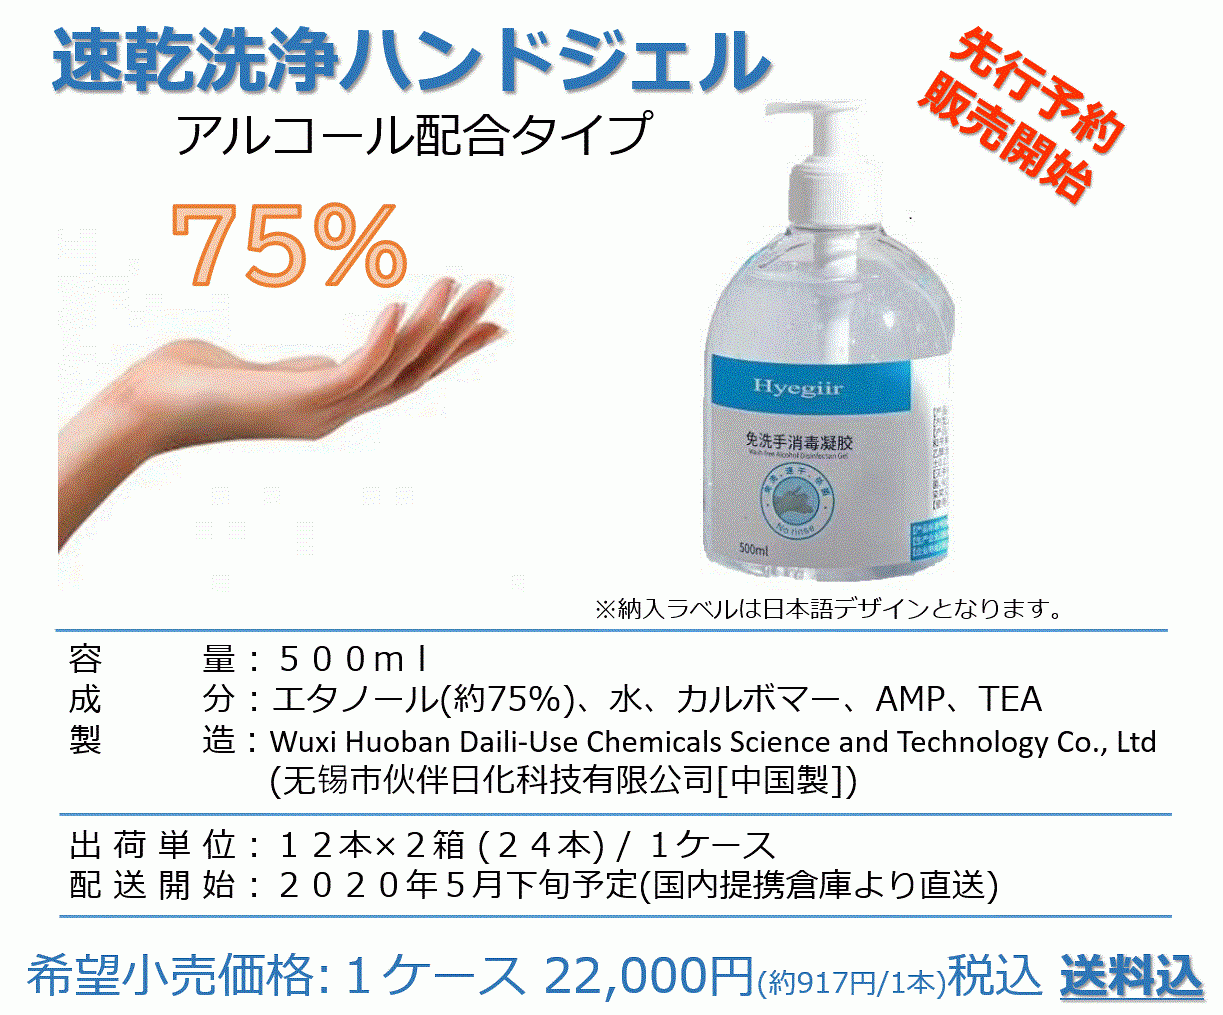 アルコール７５ の 手指用洗浄ハンドジェル 予約販売開始 メディカルツーリズム ジャパン株式会社のプレスリリース